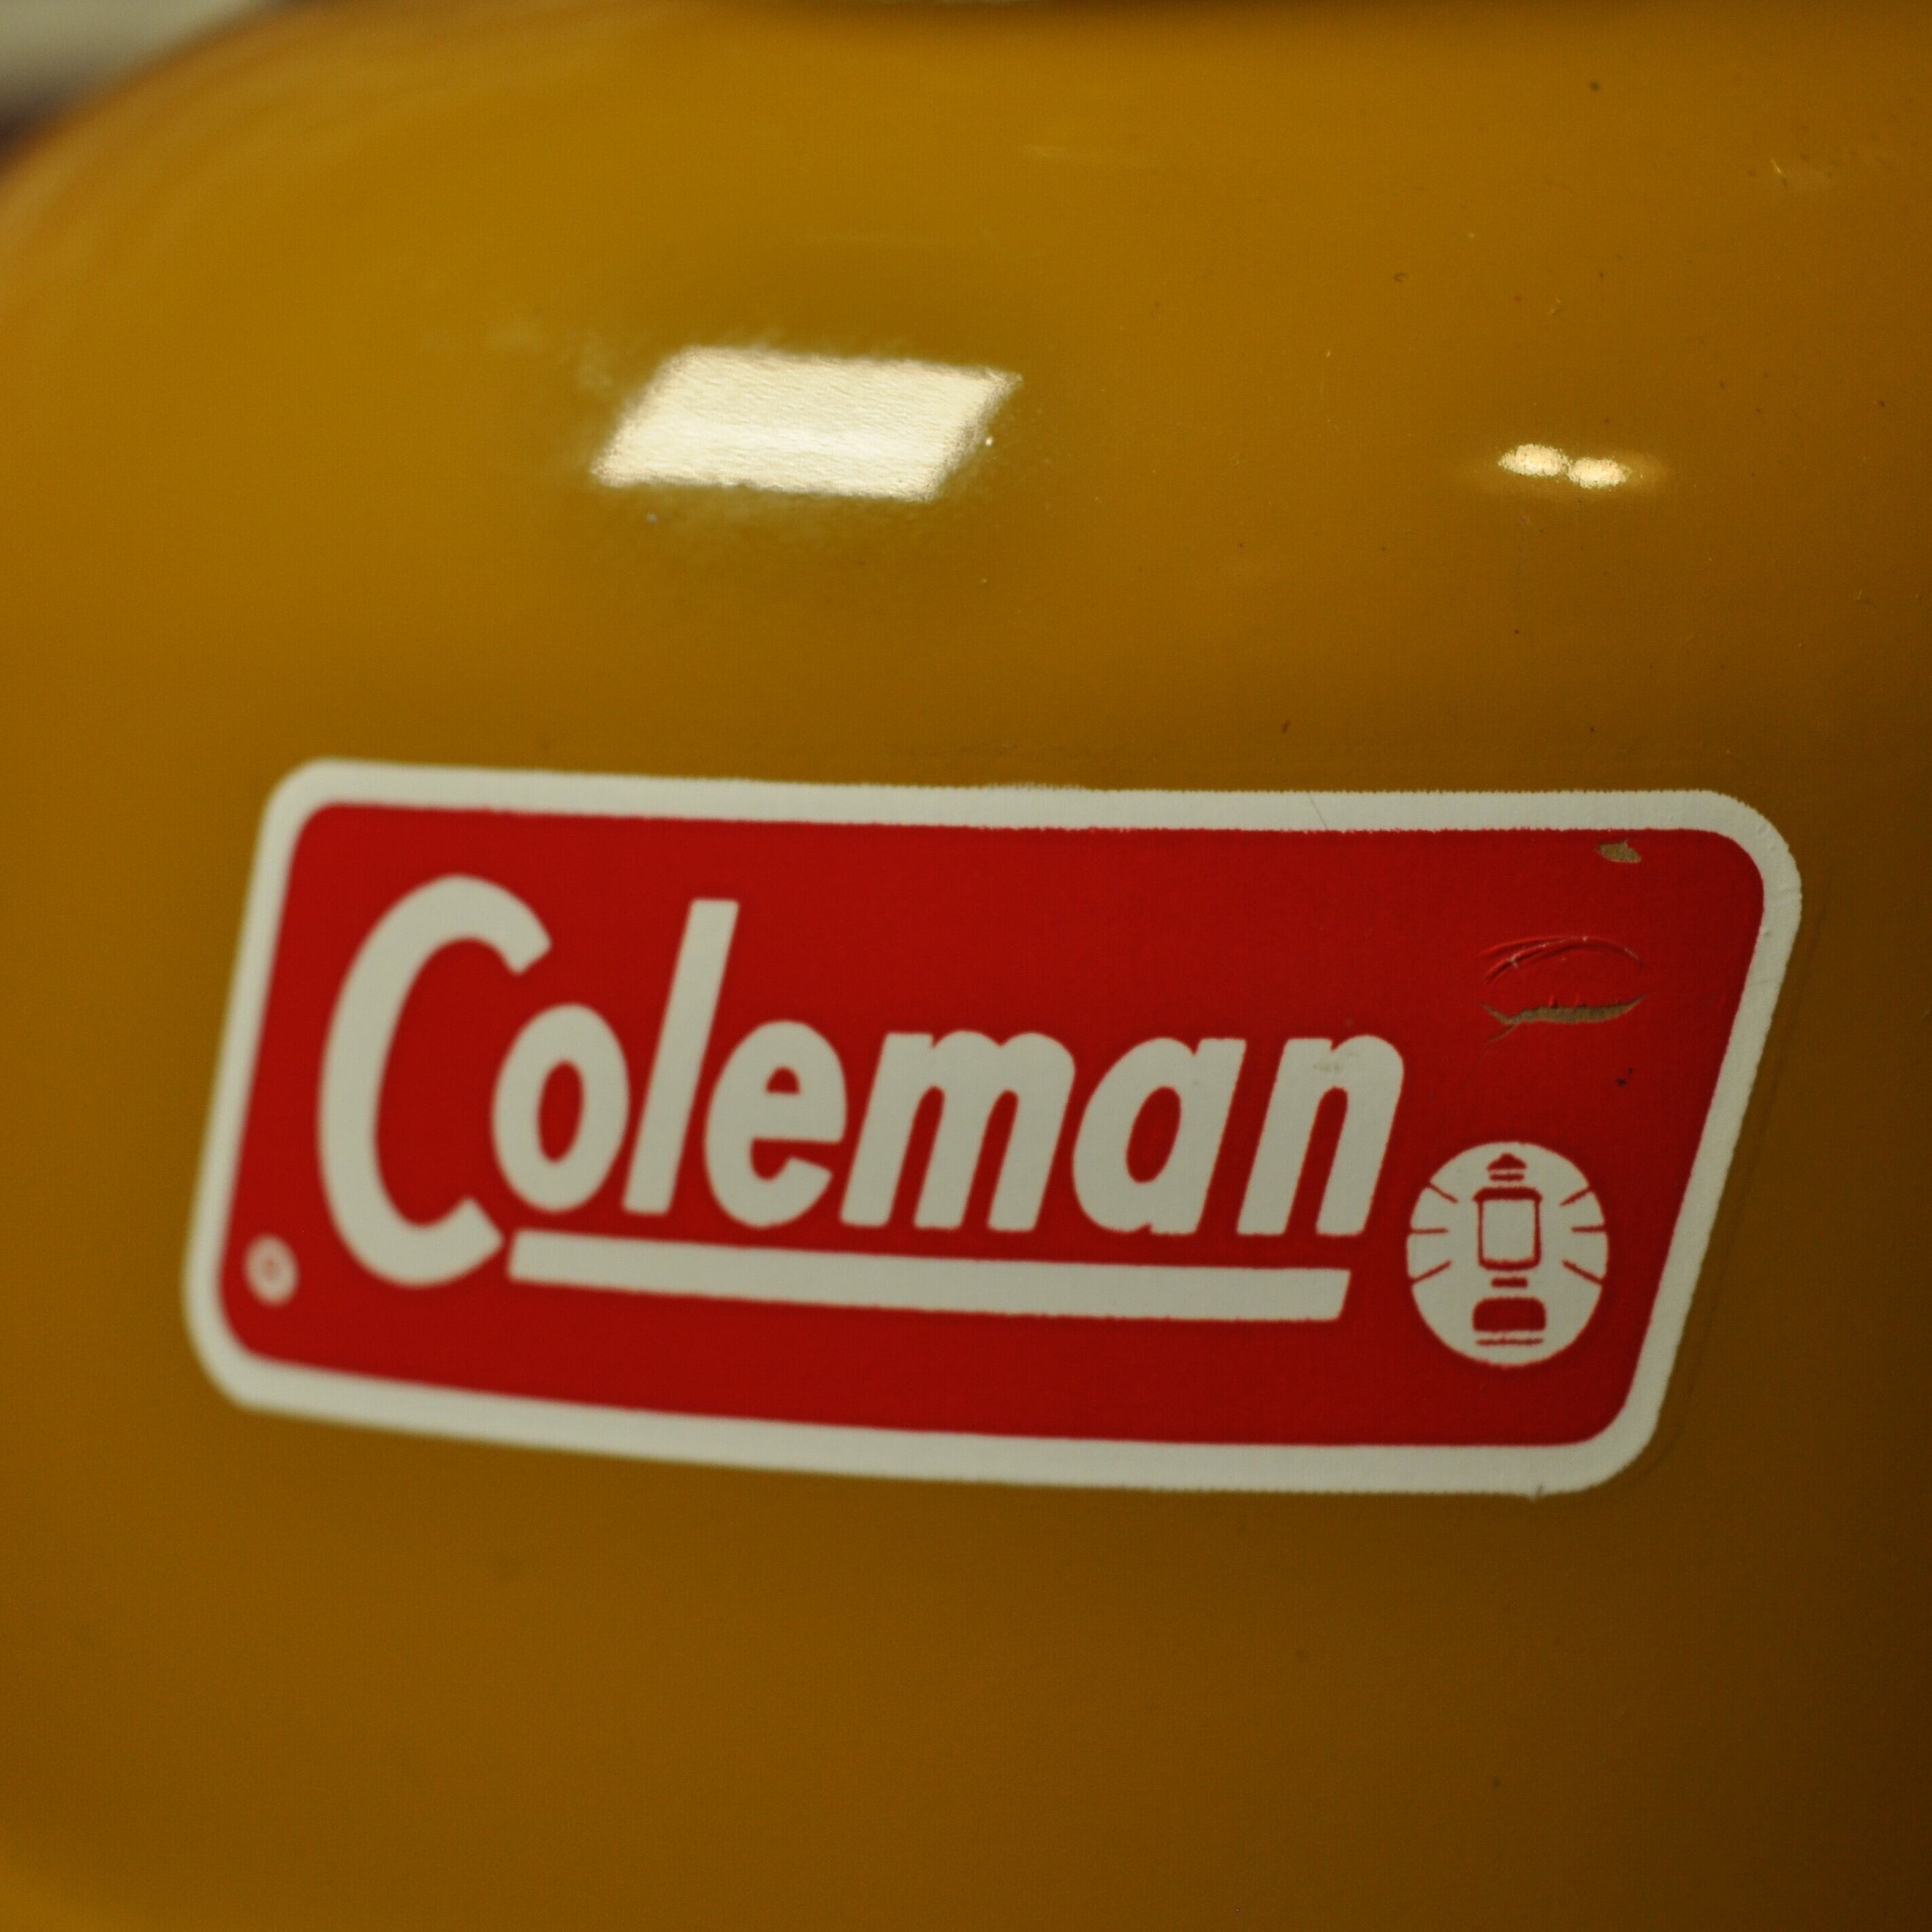 コールマン 228H 1973年5月製造 ゴールドボンド ダブルマントルランタン ビッグハット COLEMAN GOLDBOND BIGHAT  使用数回 完全オリジナル | スーパービンテージデポ【Super Vintage Depot】 powered by BASE